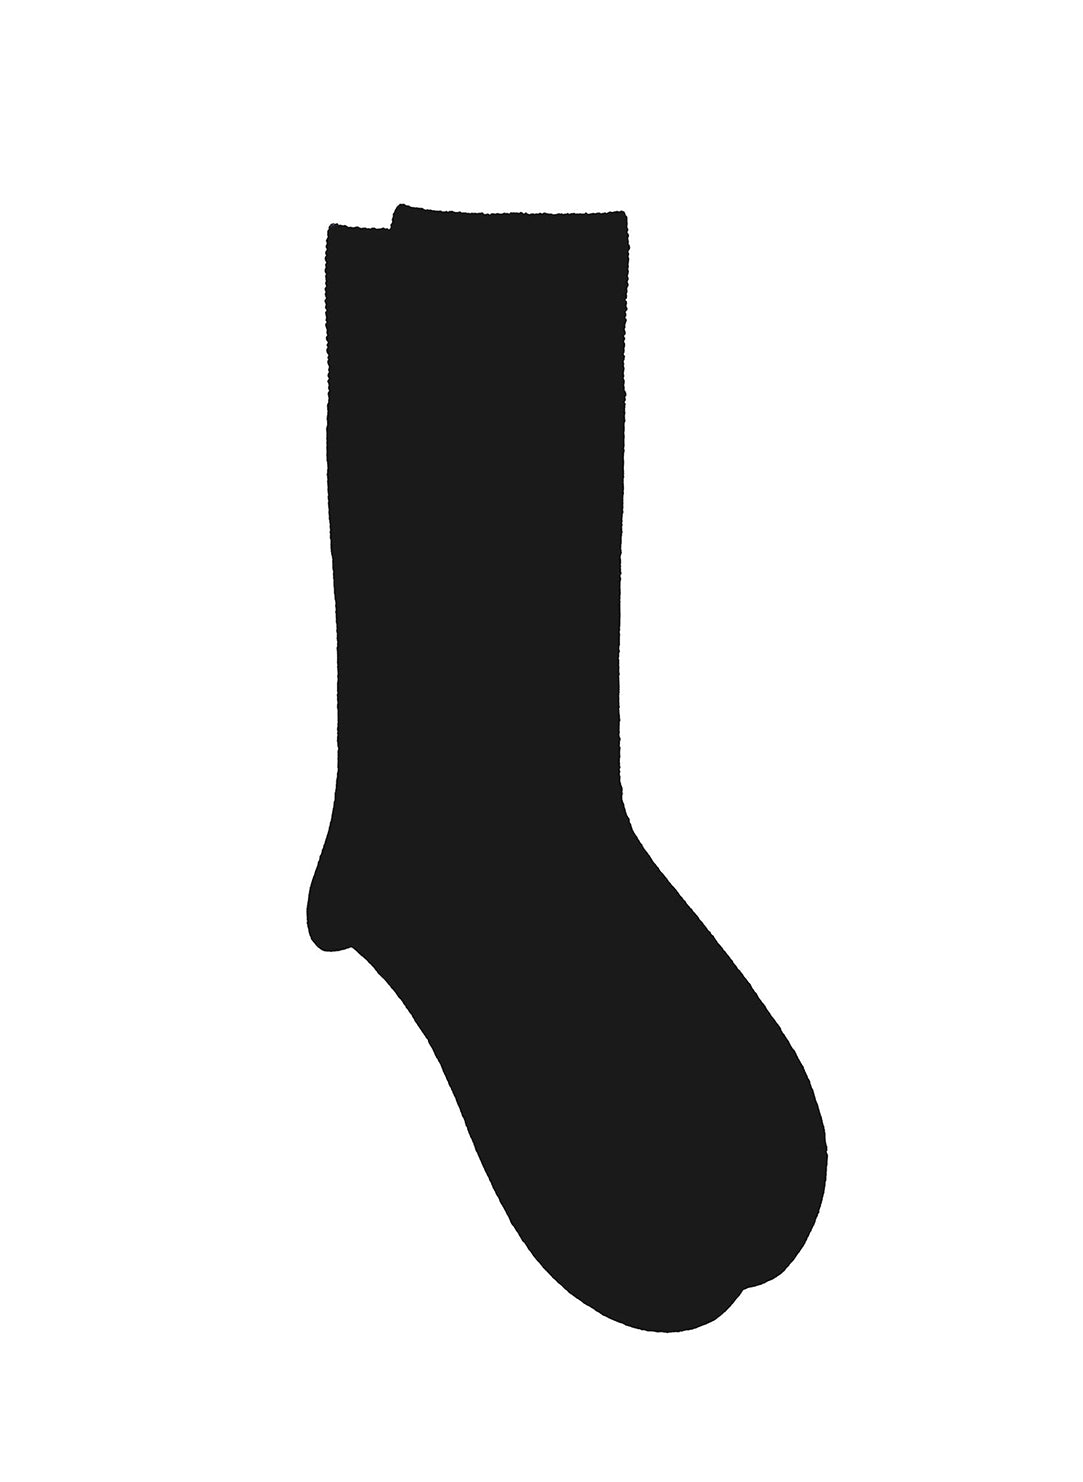 Nu-Novola Black Cashmere Socks